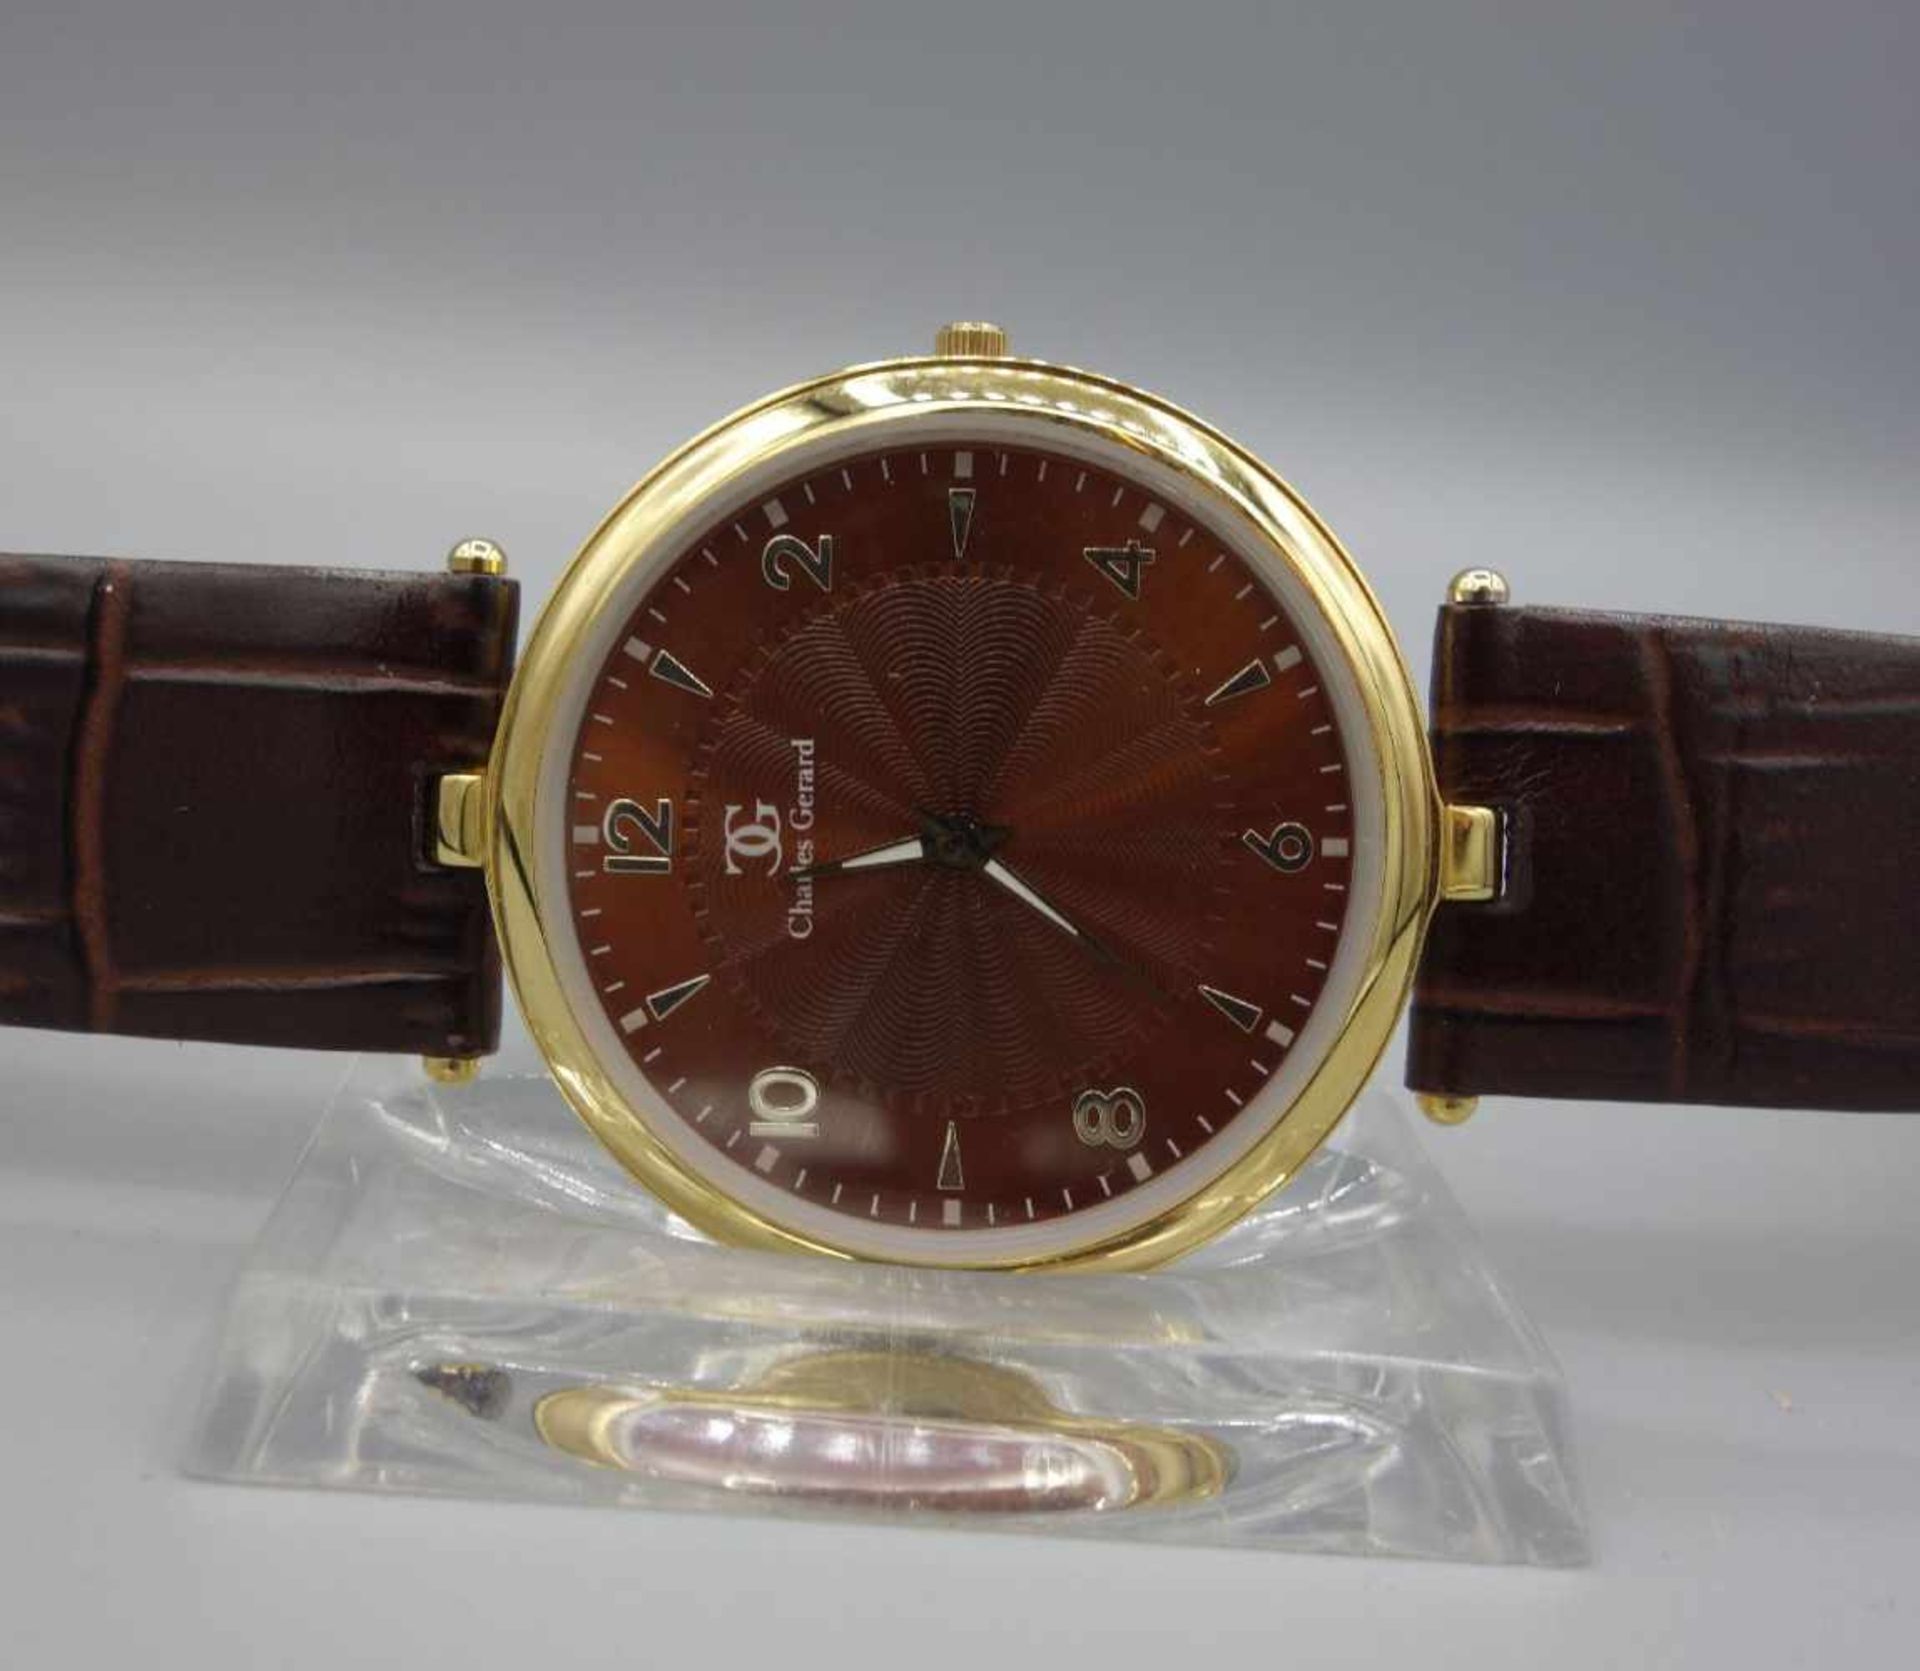 ARMBANDUHR CHARLES GERARD / wristwatch, Quarz-Werk. Rundes vergoldetes Stahlgehäuse an braunem